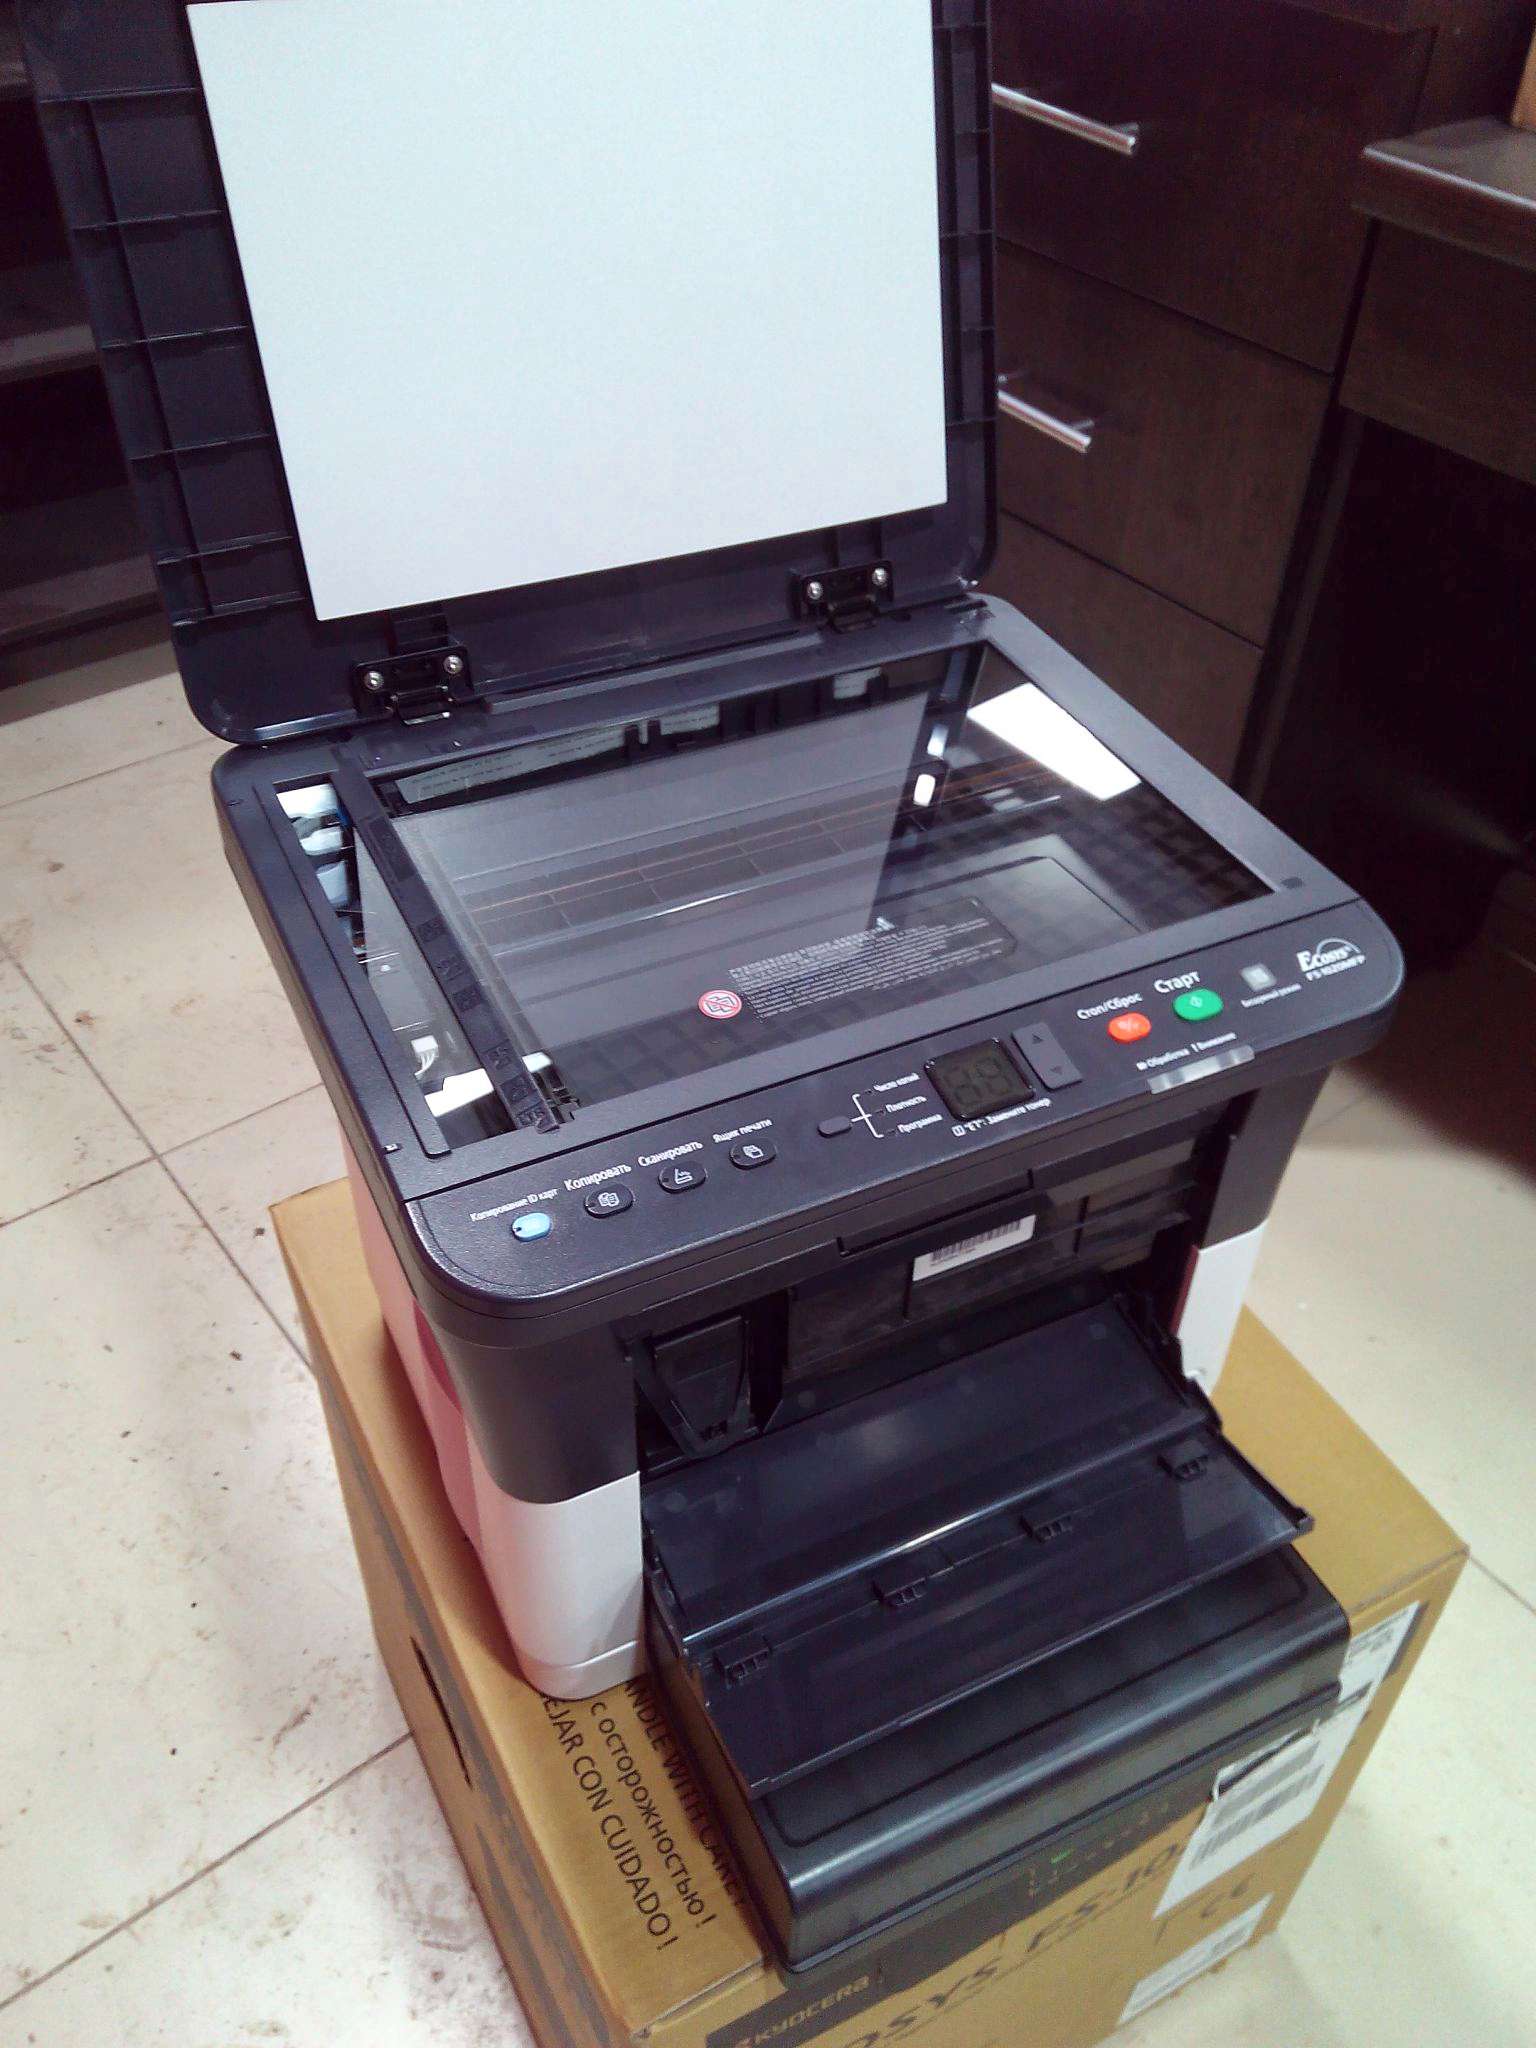 Принтер ecosys fs 1020mfp